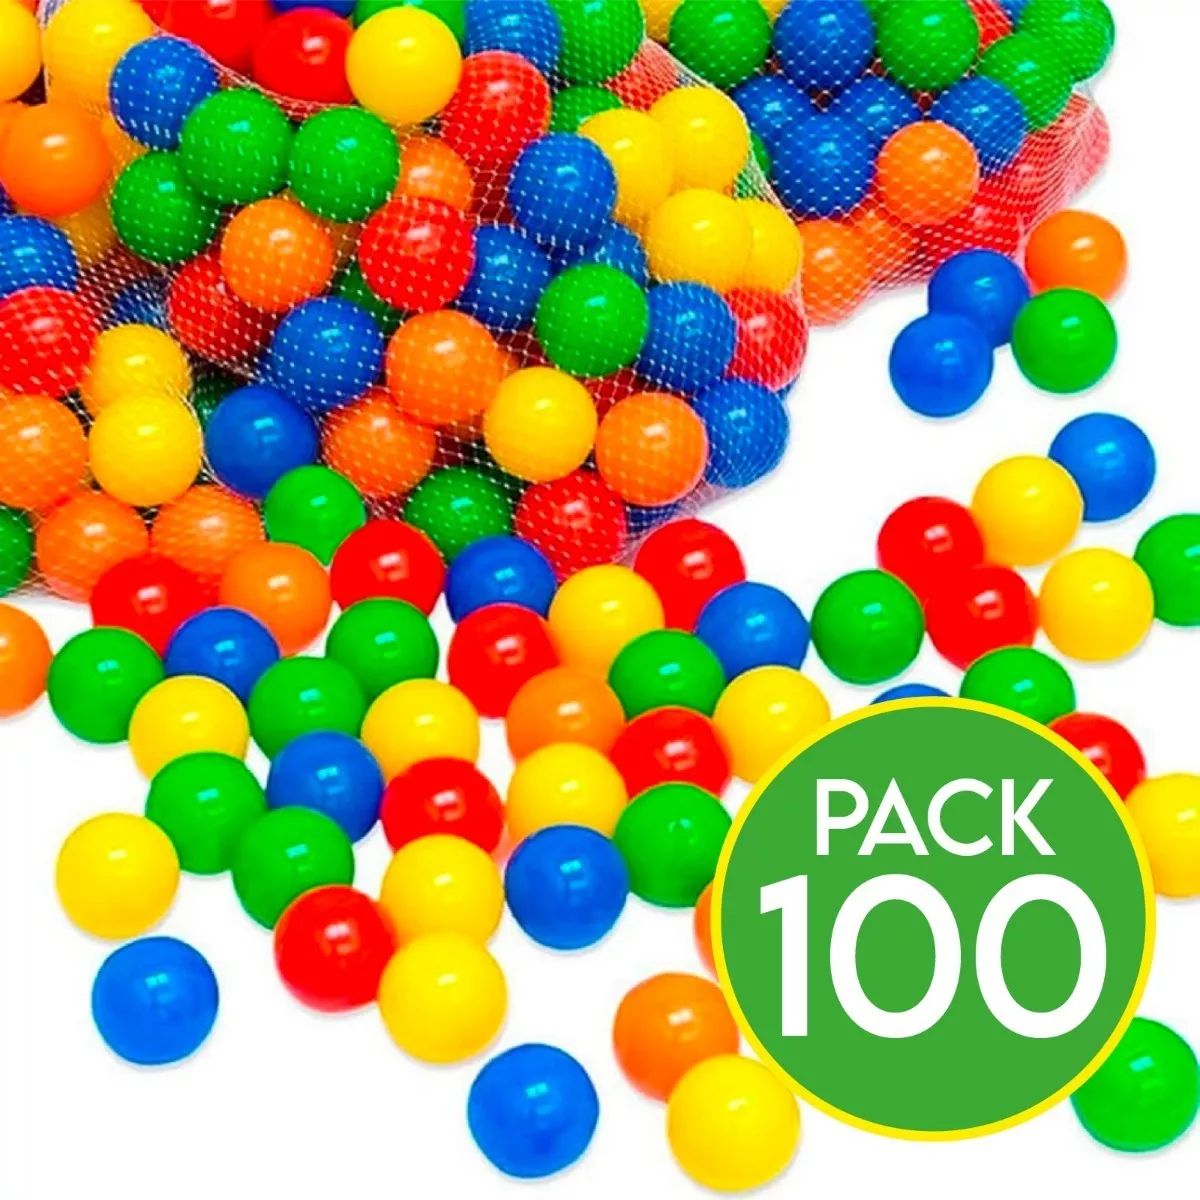 Pack 100 Pelotas Plásticas Para Piscina Colores / Lhua Store